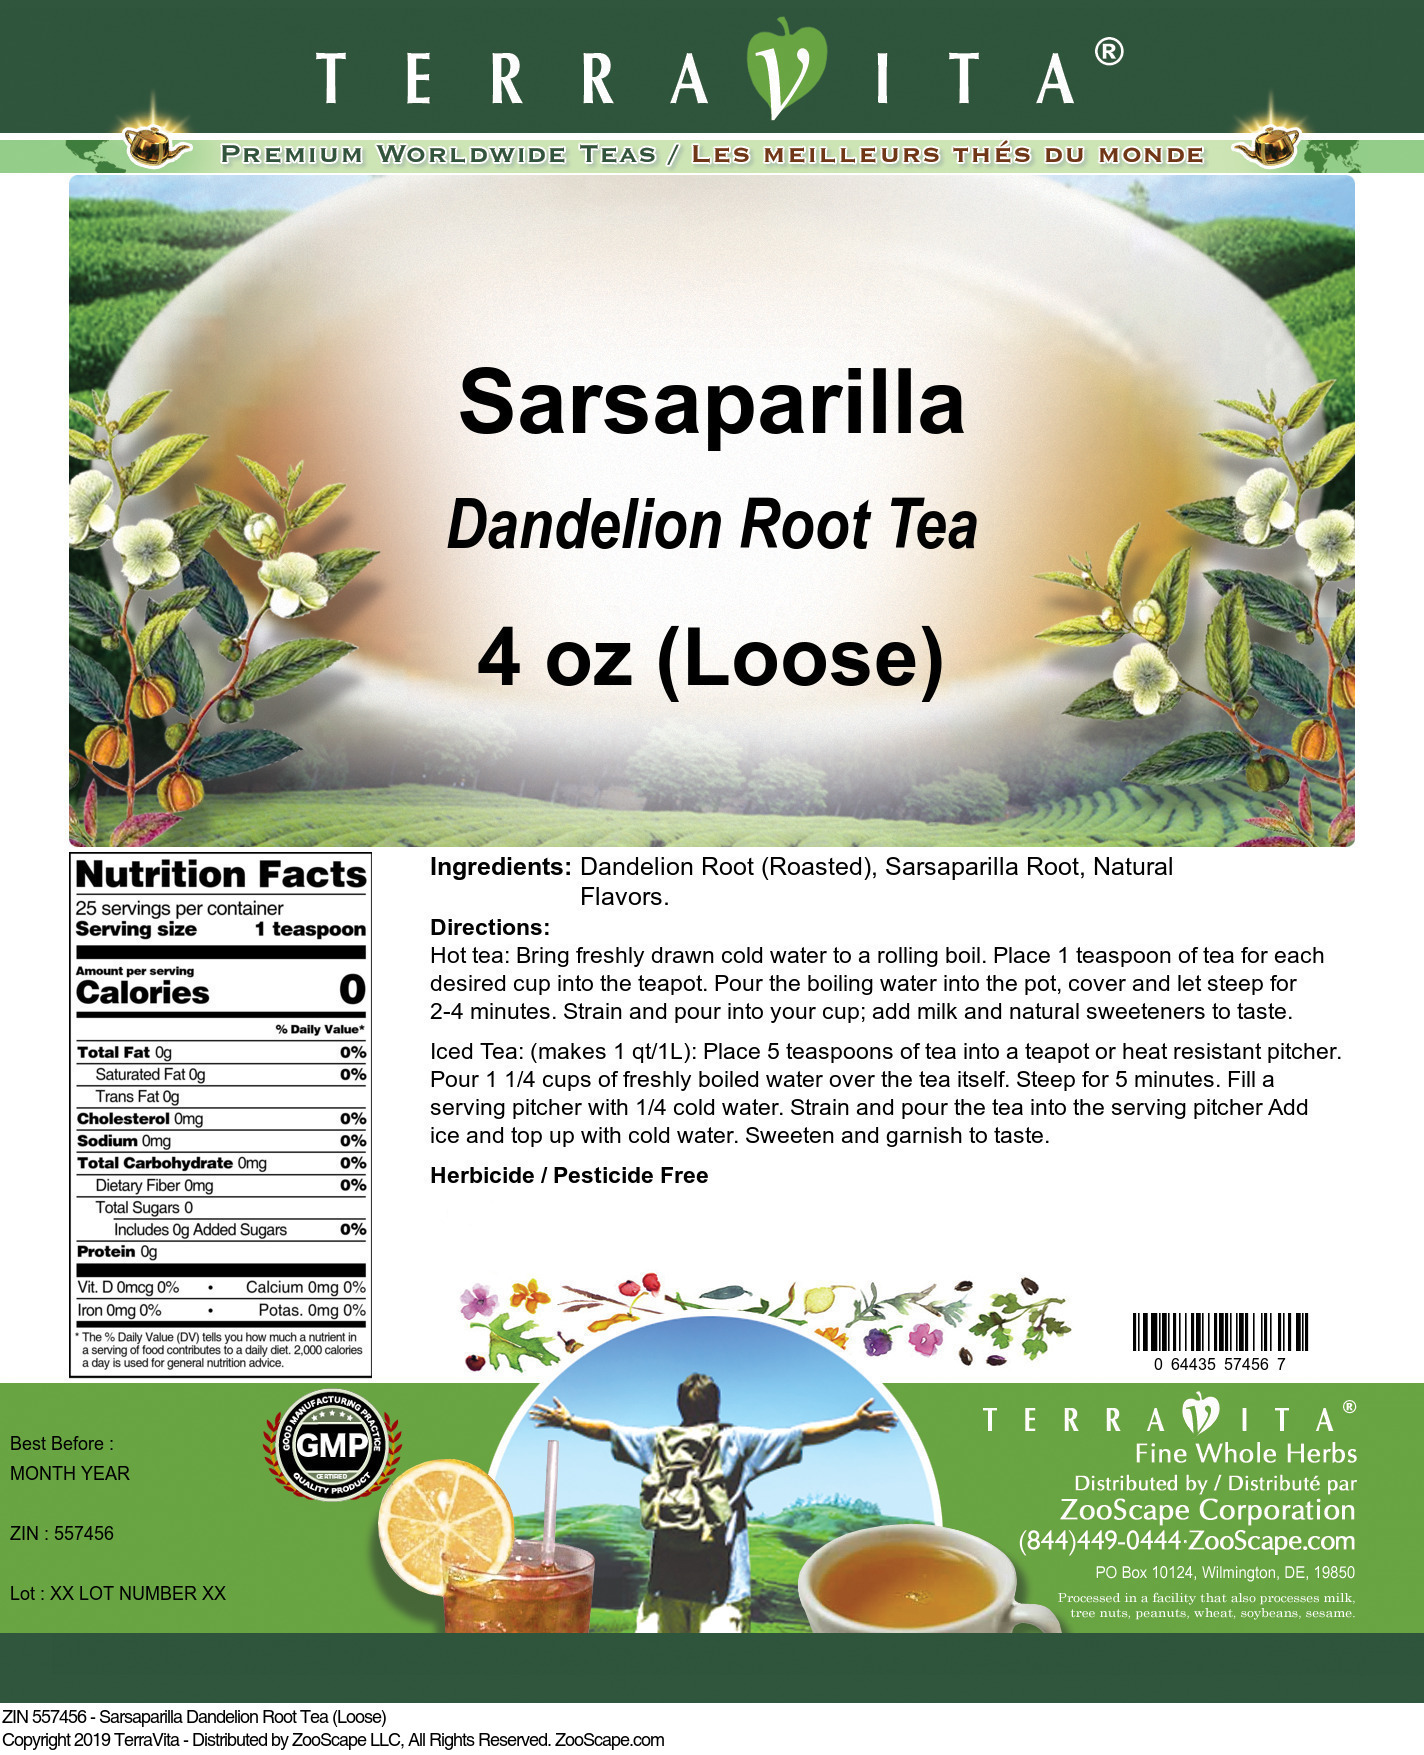 Sarsaparilla Dandelion Root Tea (Loose) - Label